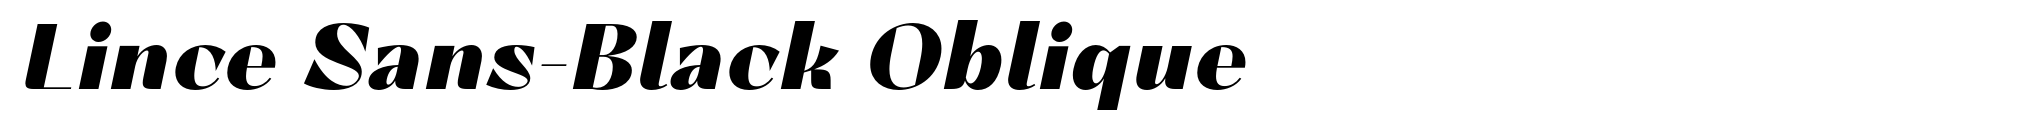 Lince Sans-Black Oblique image